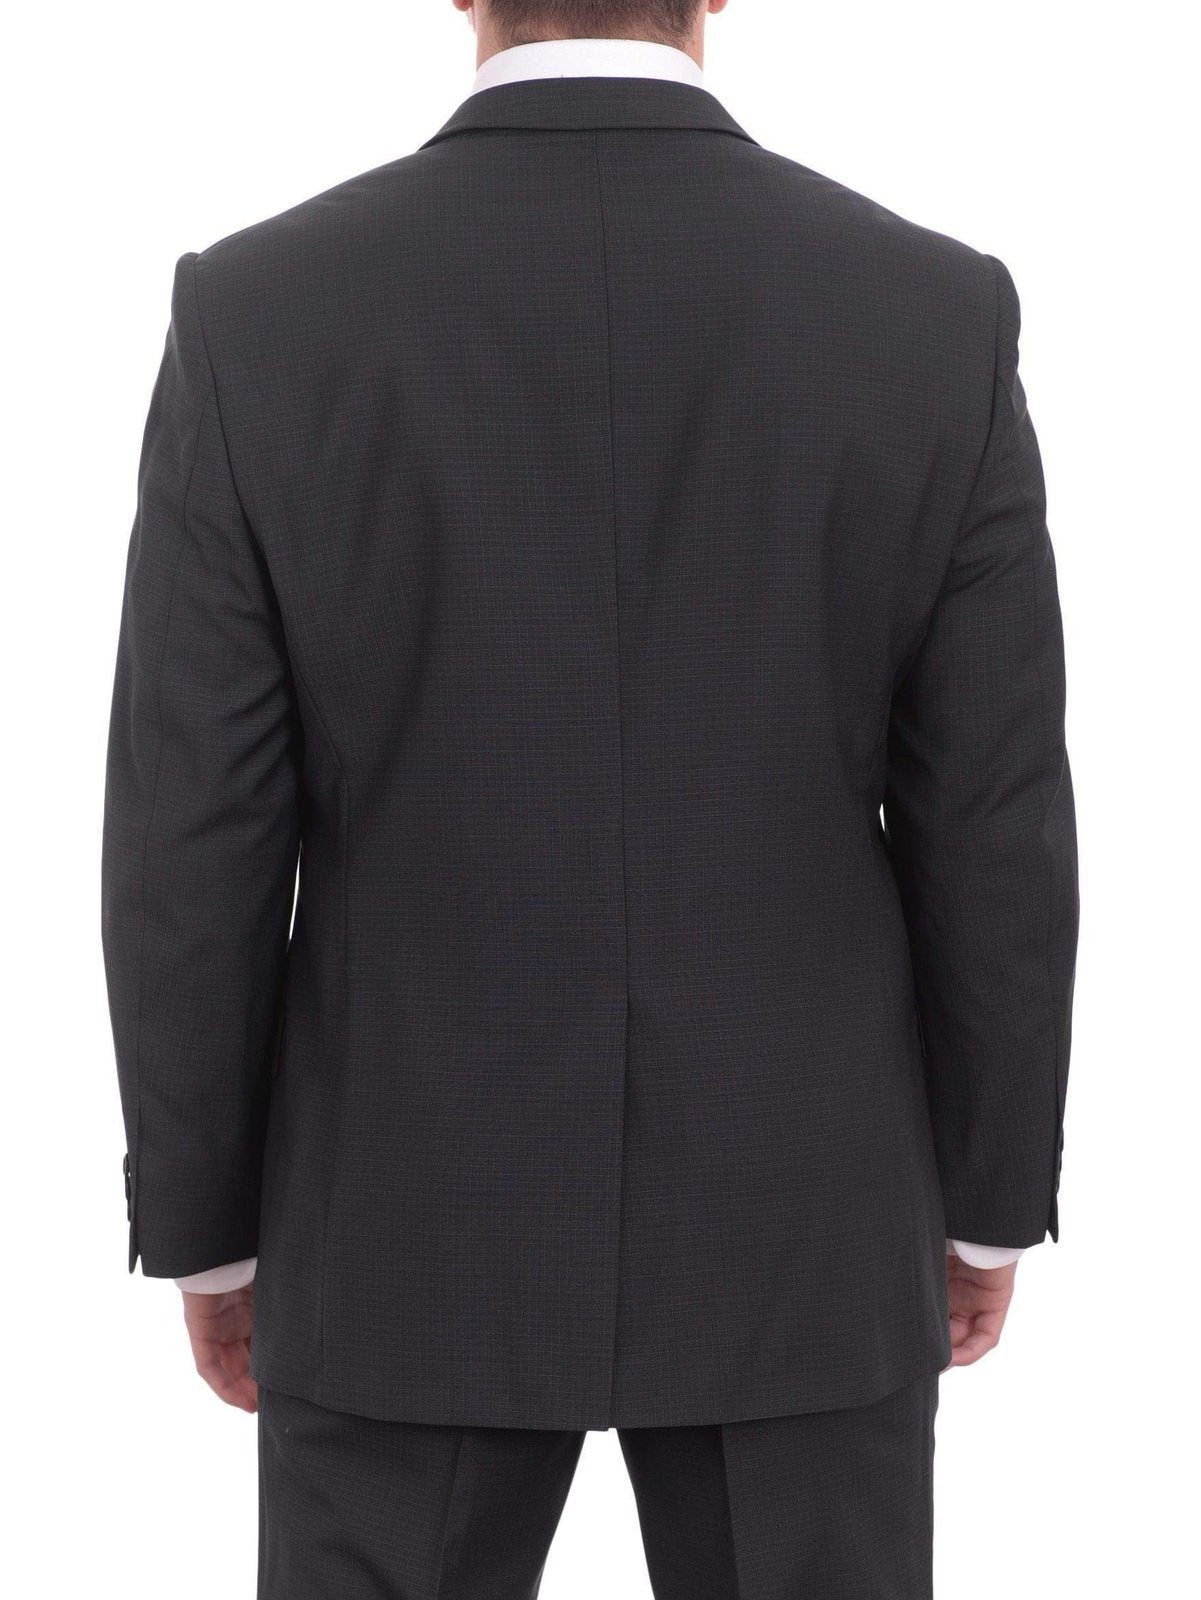 West End Sale Suits Mens West End Slim Fit Navy Blue Check 2 Button Wool Suit Jacket & Hemmed Pants